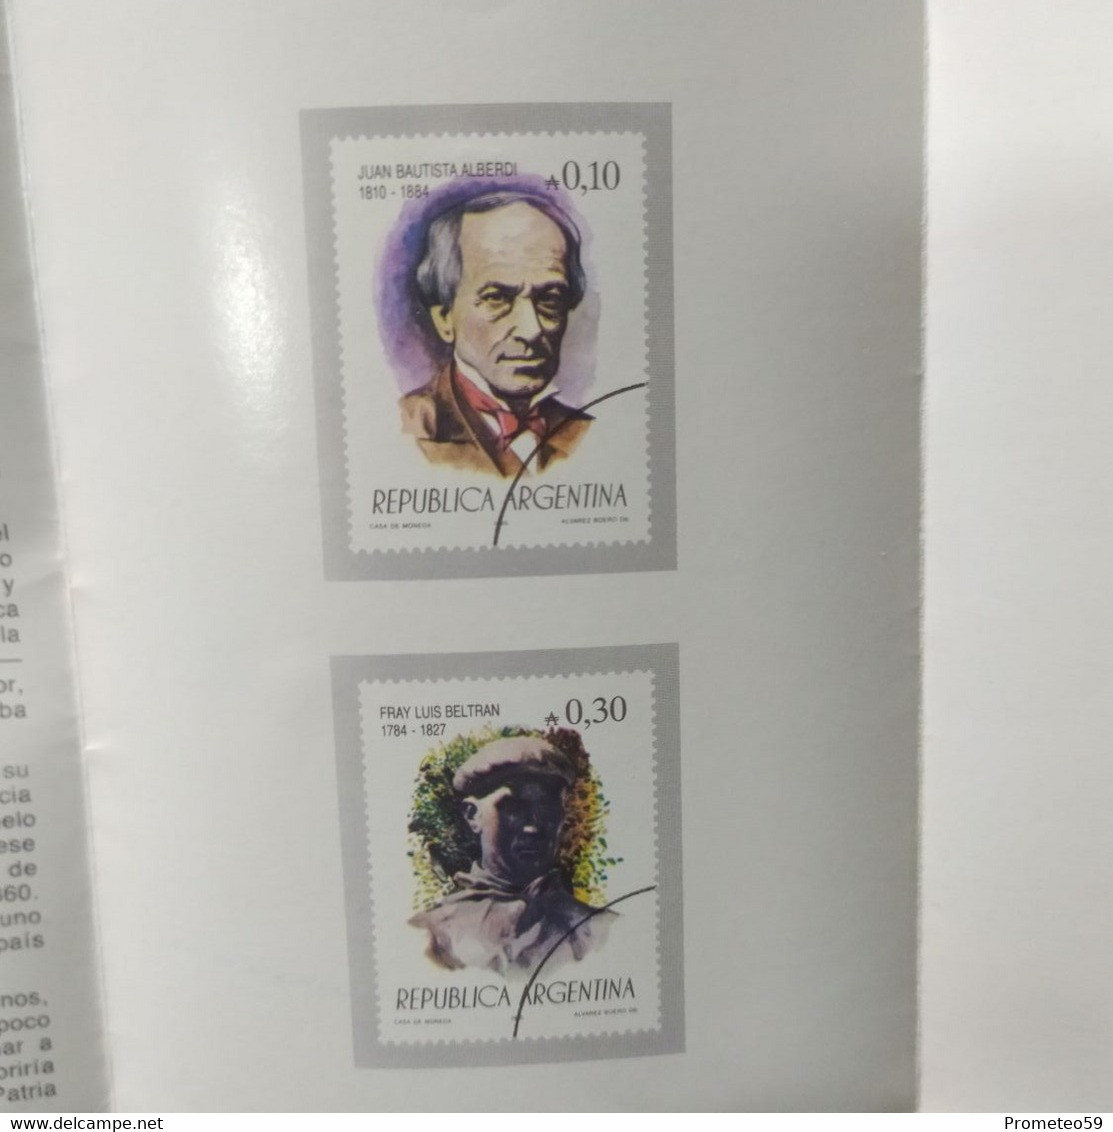 Volante Día De Emisión – Temas: Personalidad II – 5/10/1985 – Argentina - Postzegelboekjes